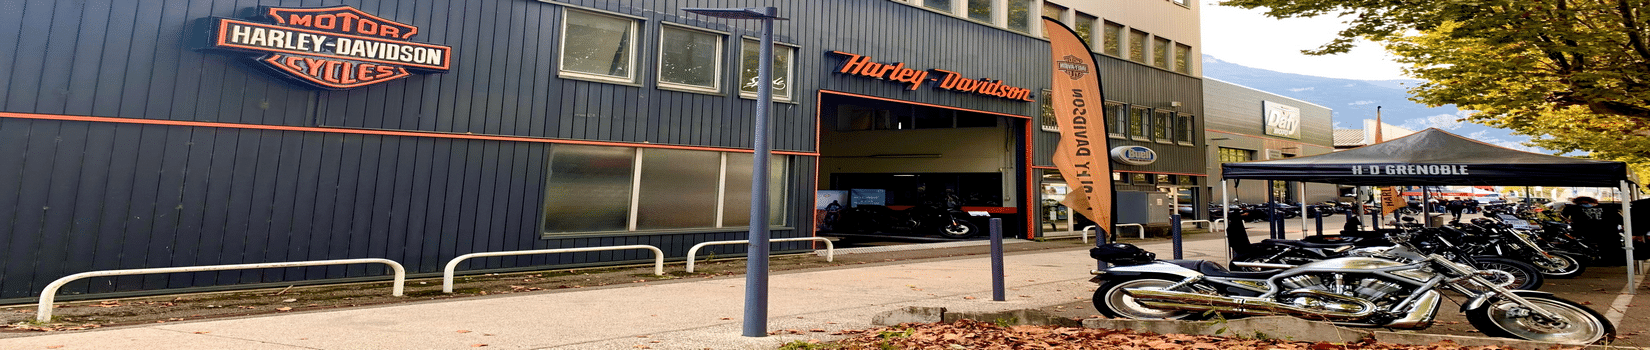 Harley Davidson Grenoble